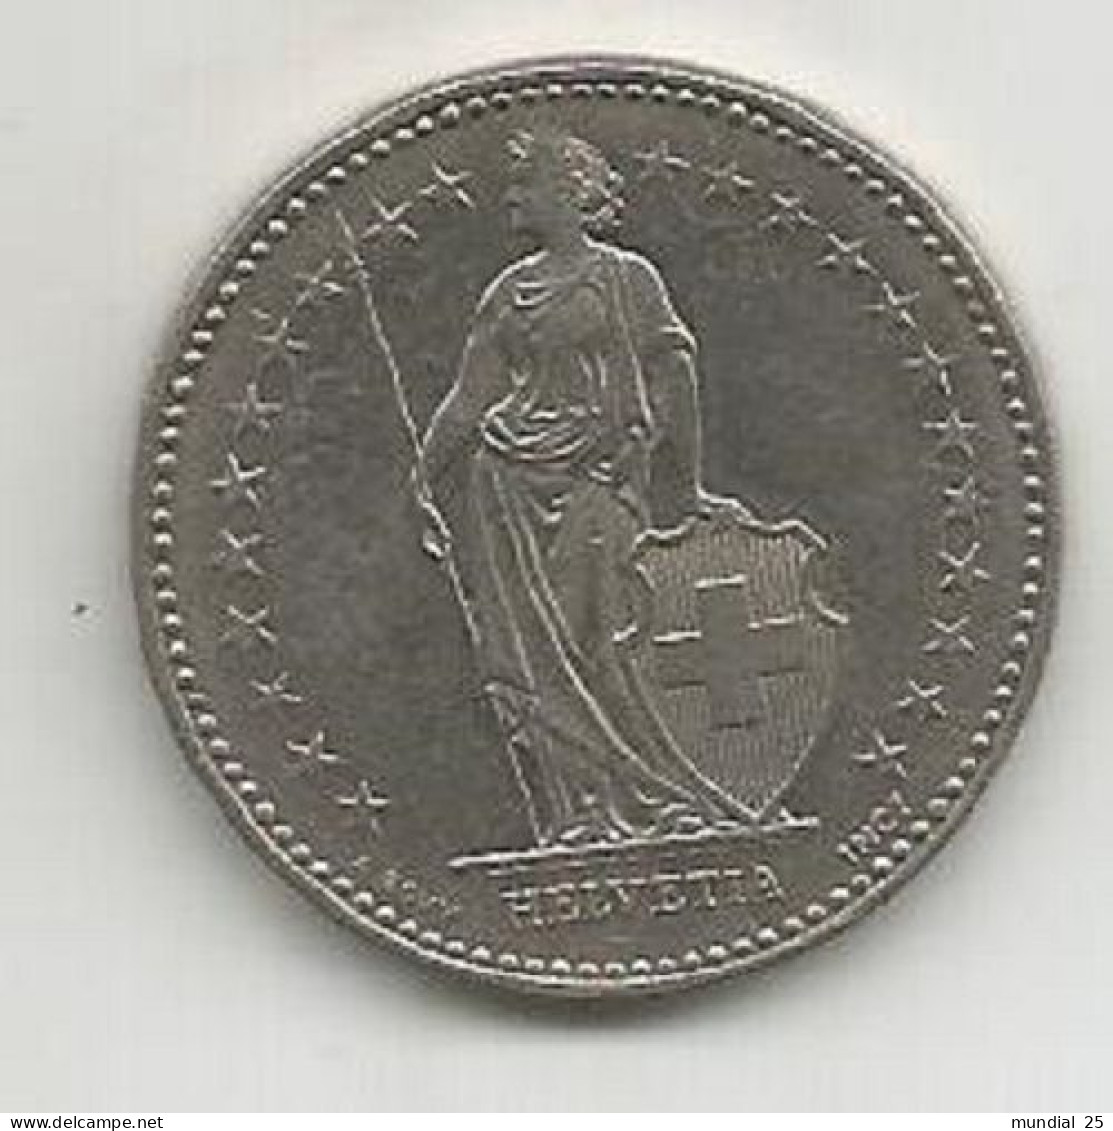 SWITZERLAND 2 FRANCS 1995 B - 2 Francs